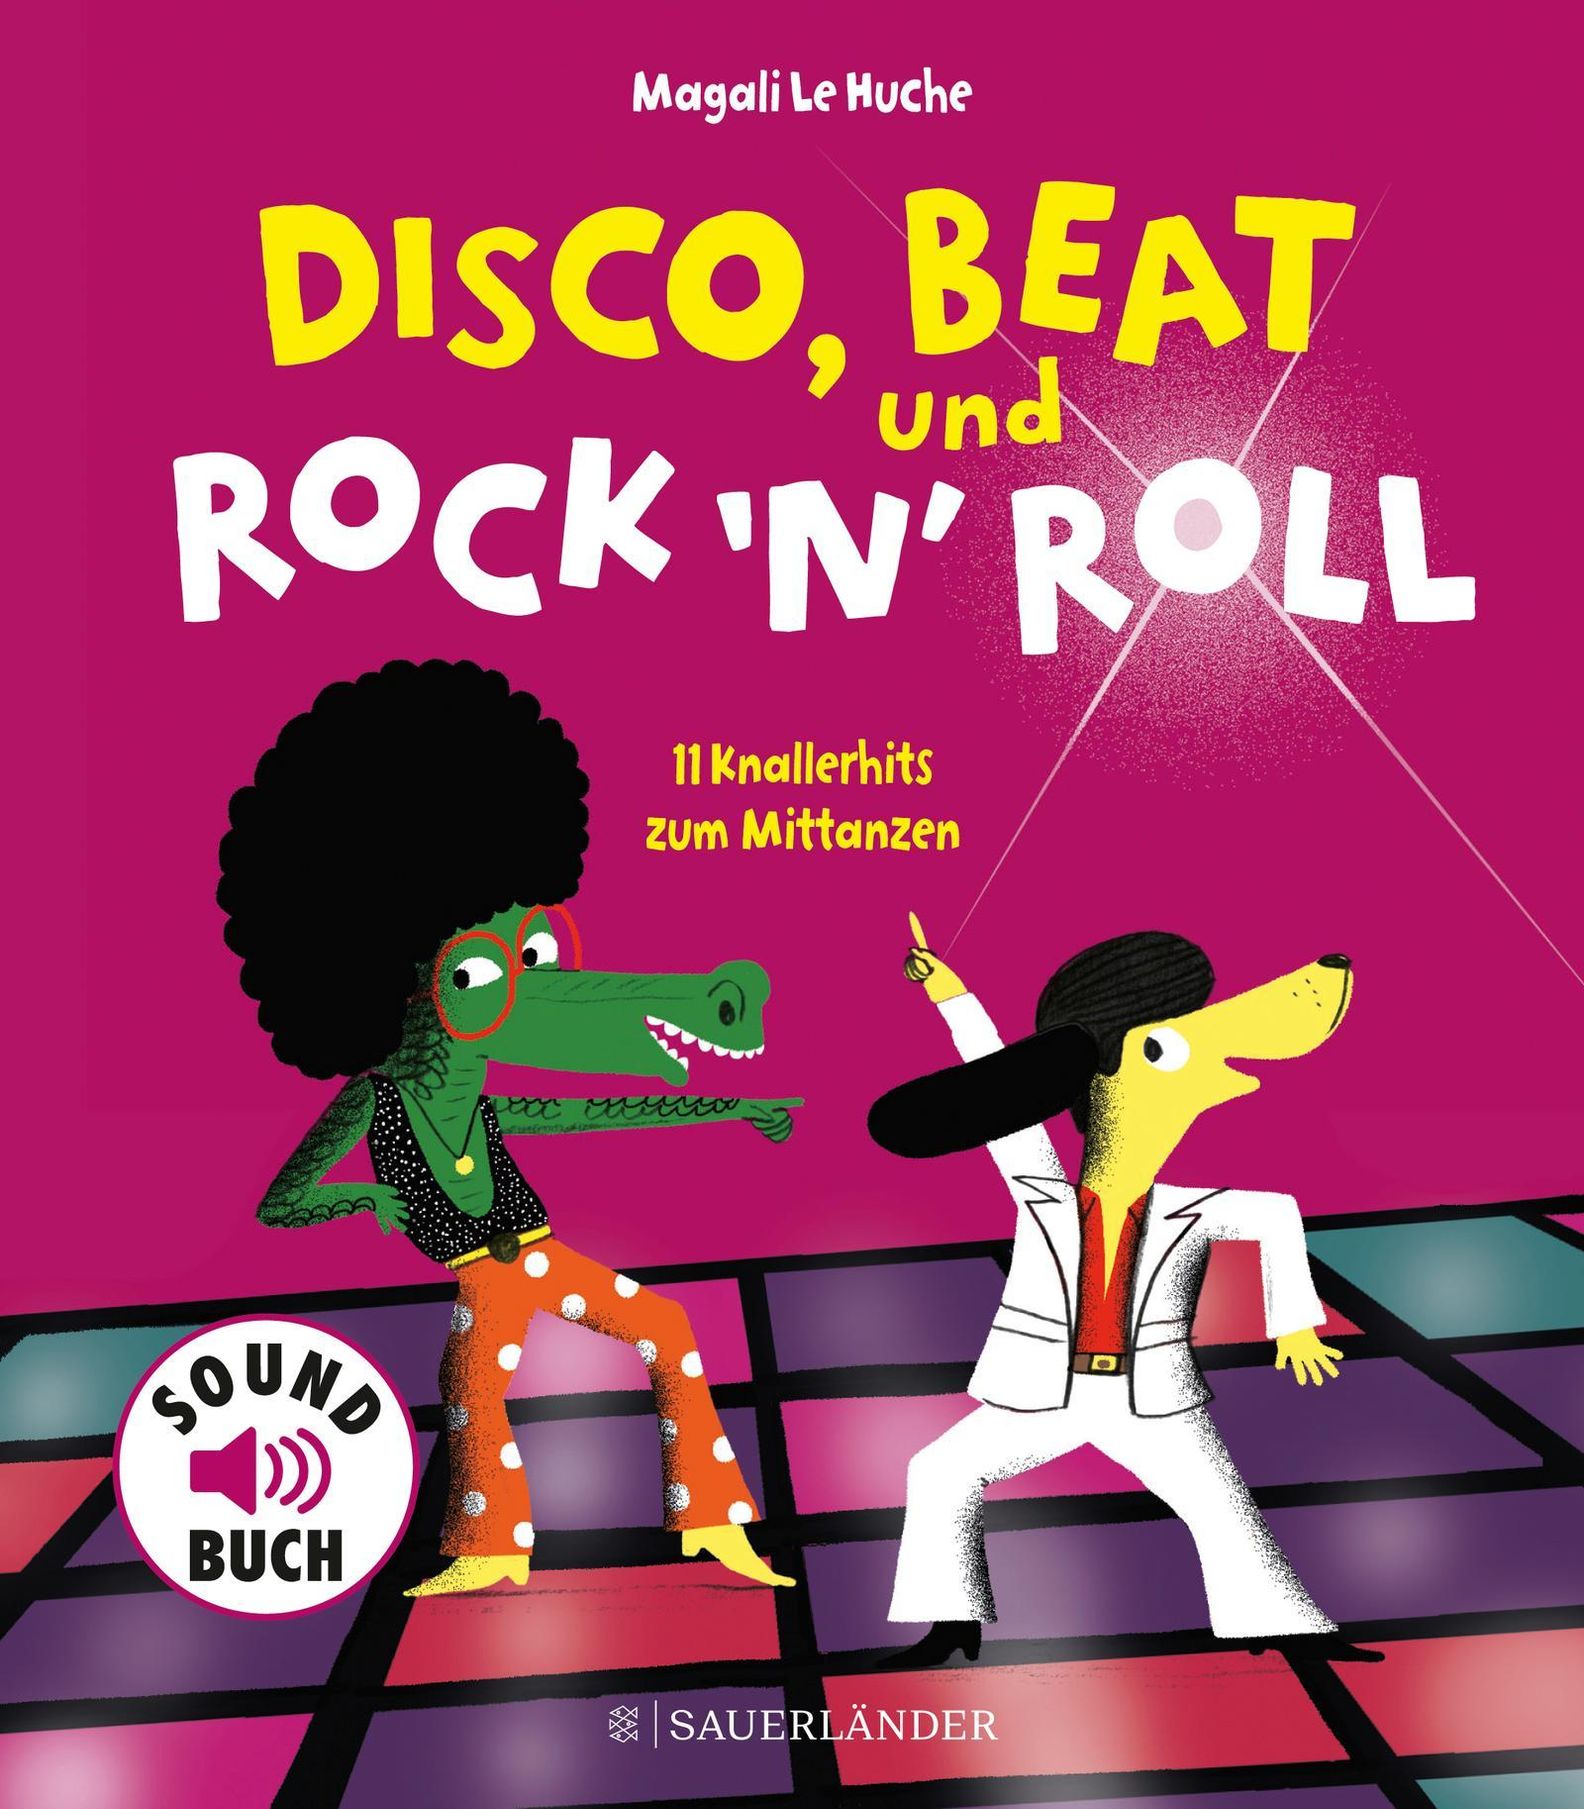 Disco, Beat und Rock'n'Roll, Soundbuch Buch versandkostenfrei - Weltbild.de